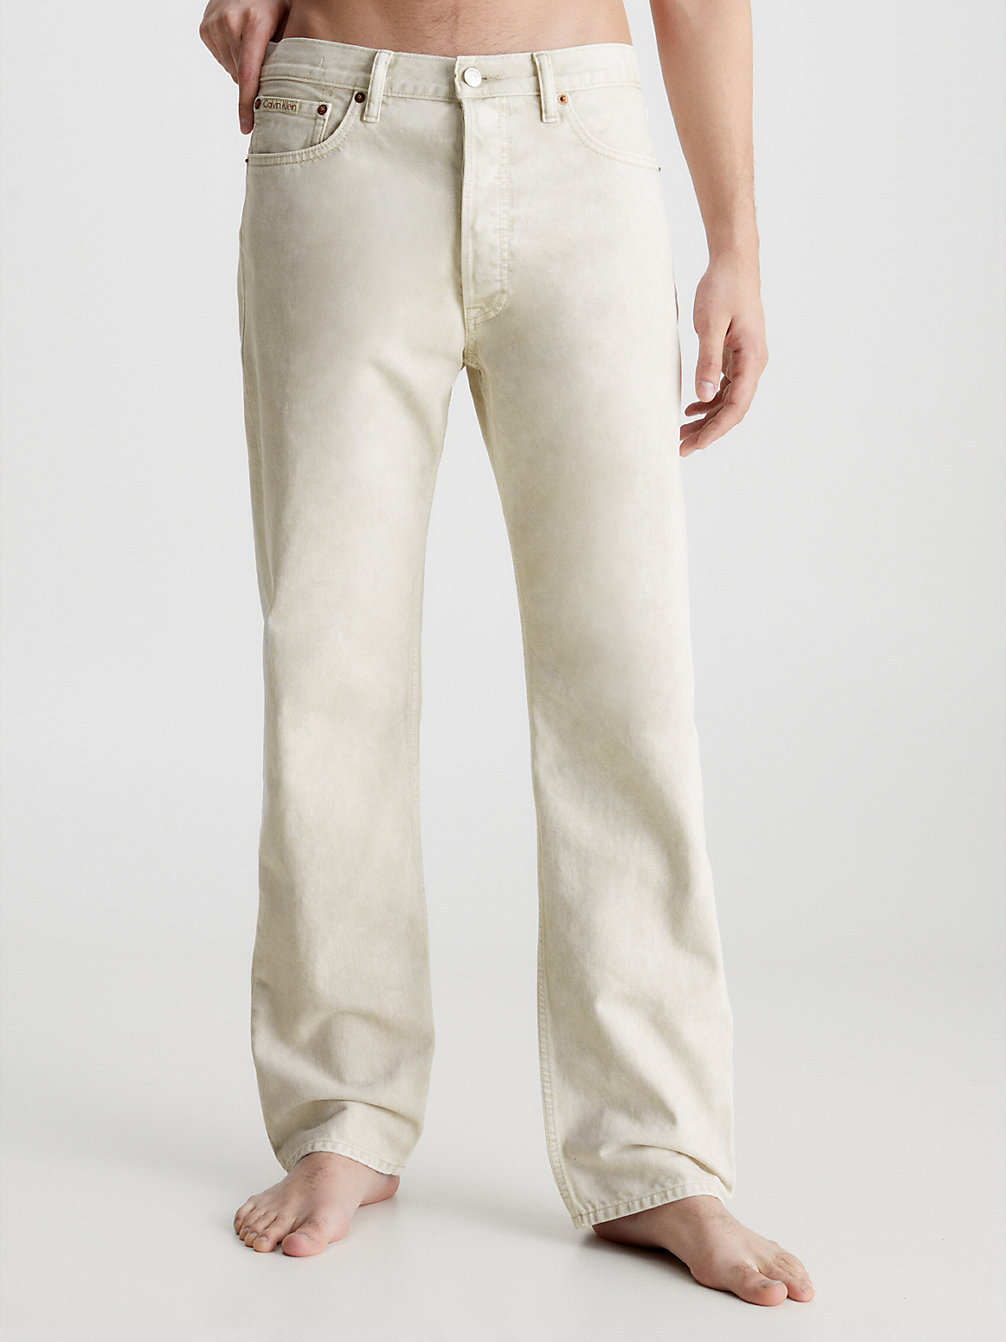 WHITE Unisex Straight Jeans - CK Standards undefined heren Calvin Klein